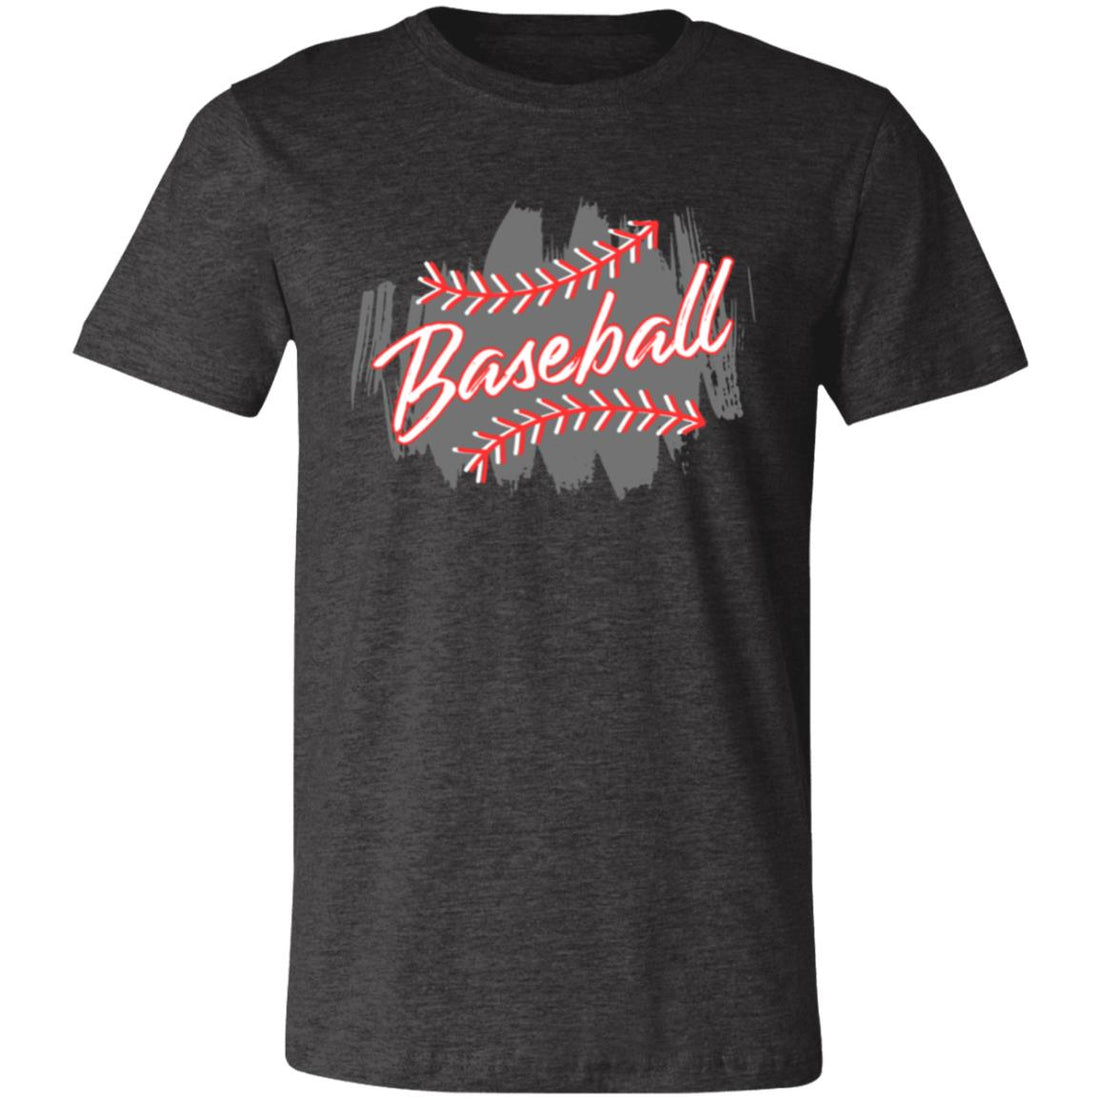 Baseball Splash Short-Sleeve T-Shirt - T-Shirts - Positively Sassy - Baseball Splash Short-Sleeve T-Shirt